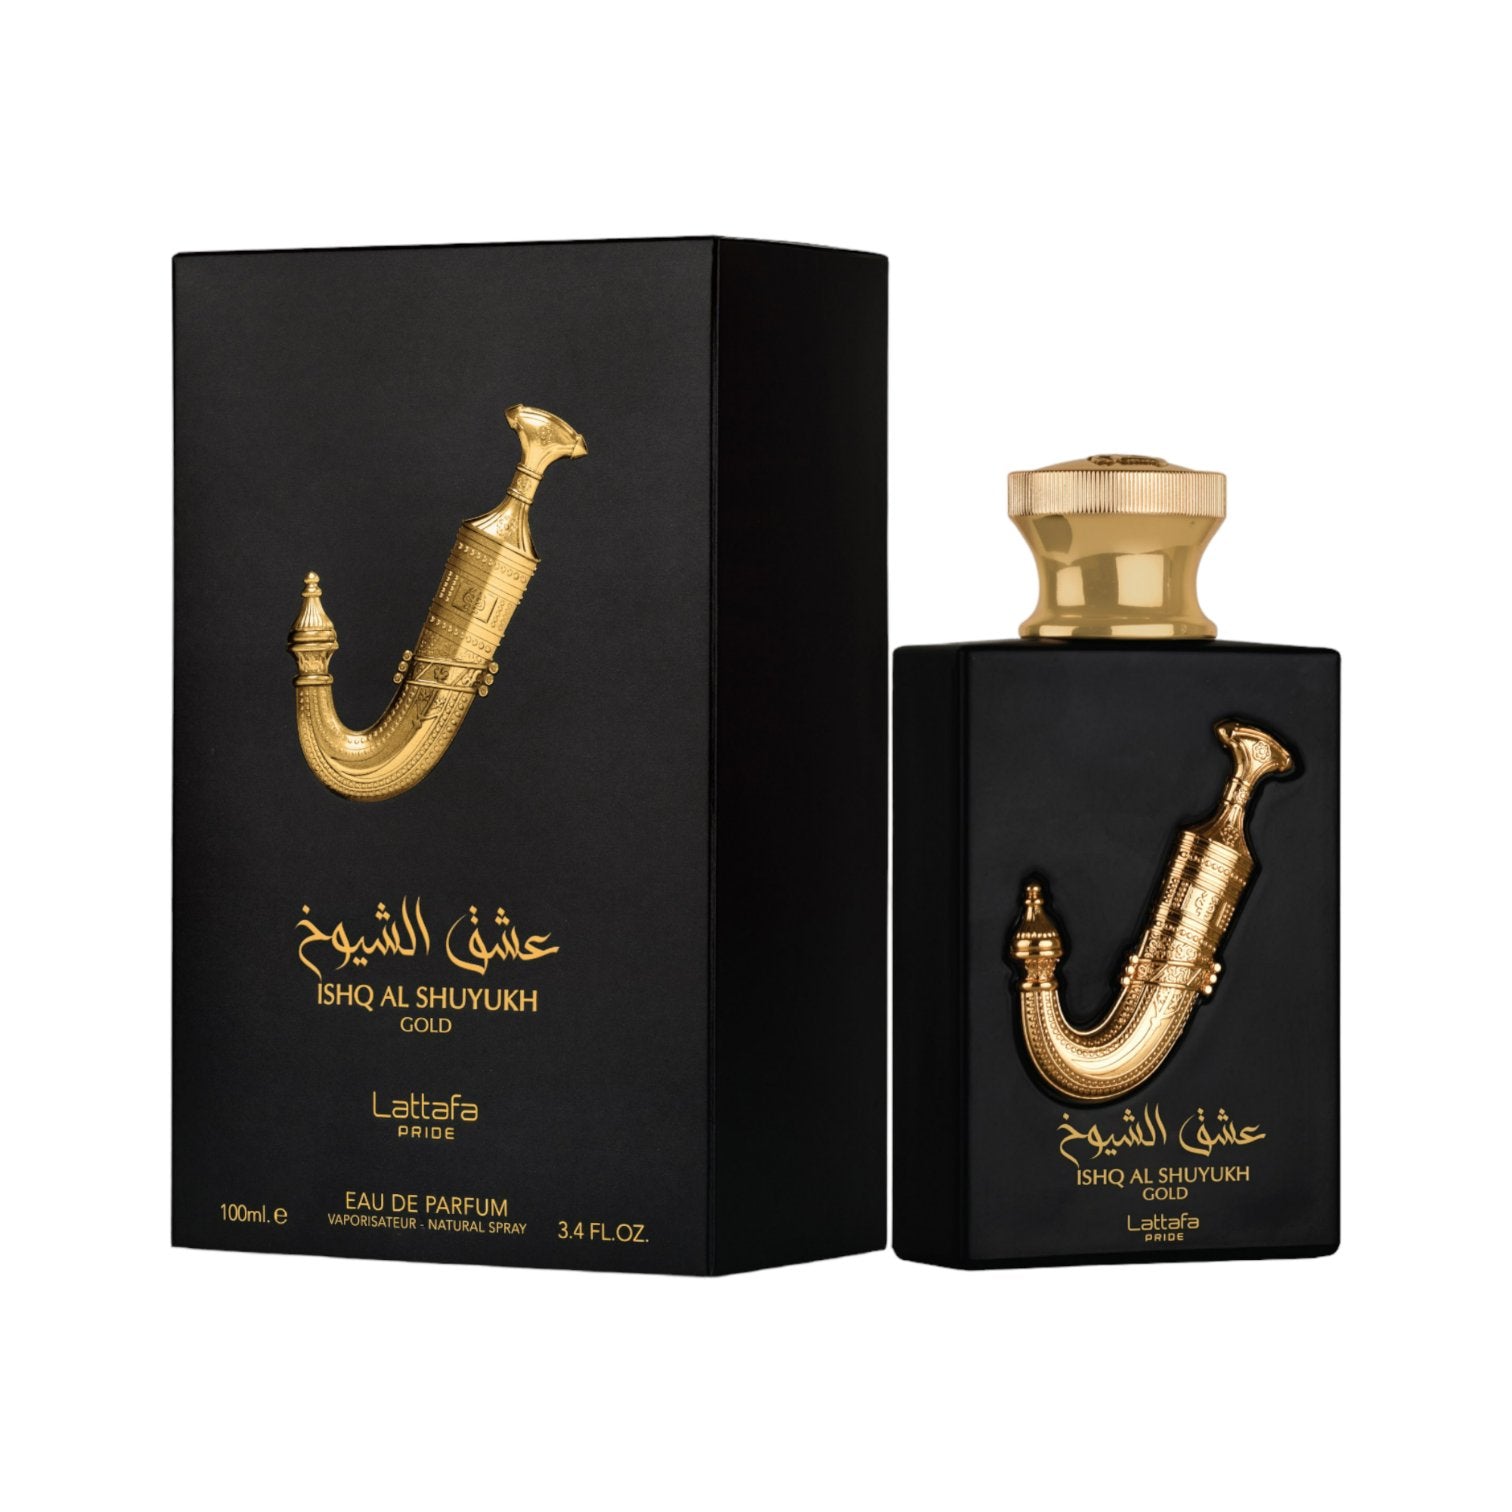 Ishq Al Shuyukh Gold 100ml EDP from Lattafa's Luxury Range